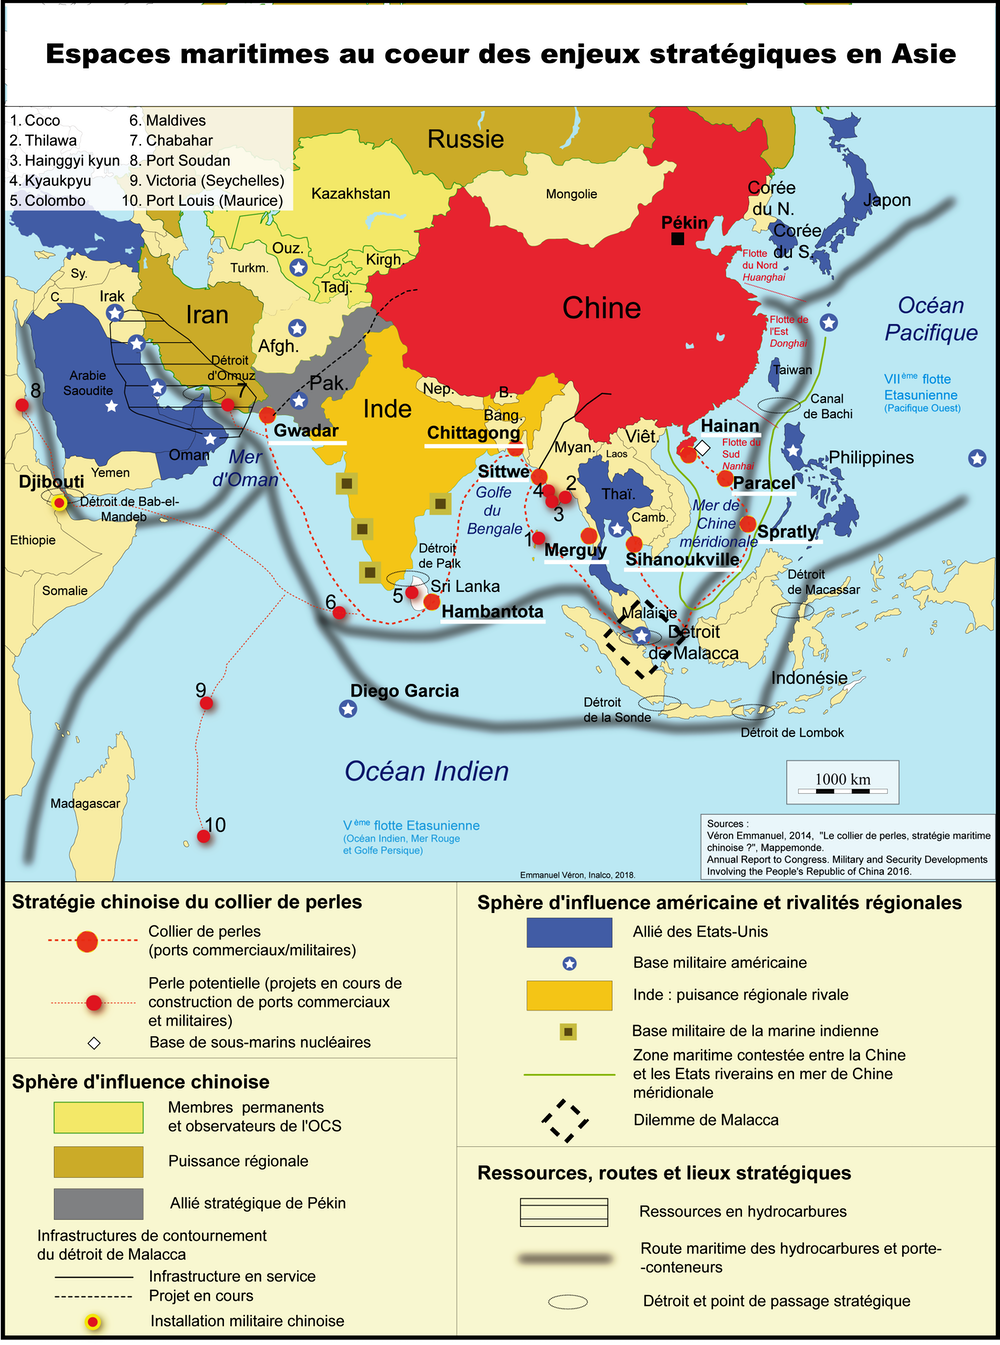 Les îles militarisées en mer de Chine du Sud : la partie émergée de la  puissance de frappe de Pékin